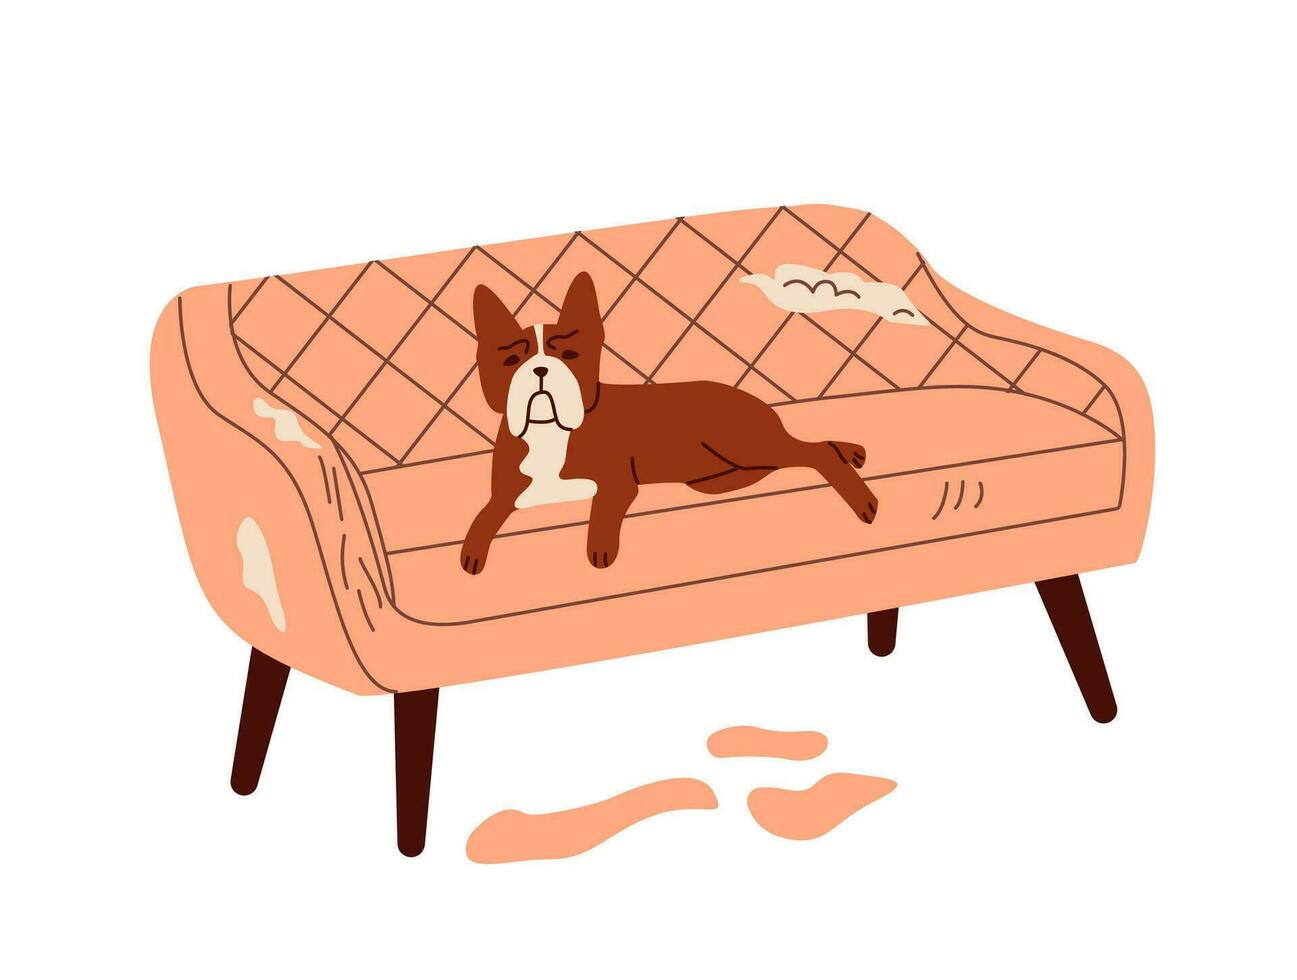 dålig hund beteende. hund förstöra möbel, skadlig, ripping soffa. platt vektor illustration.